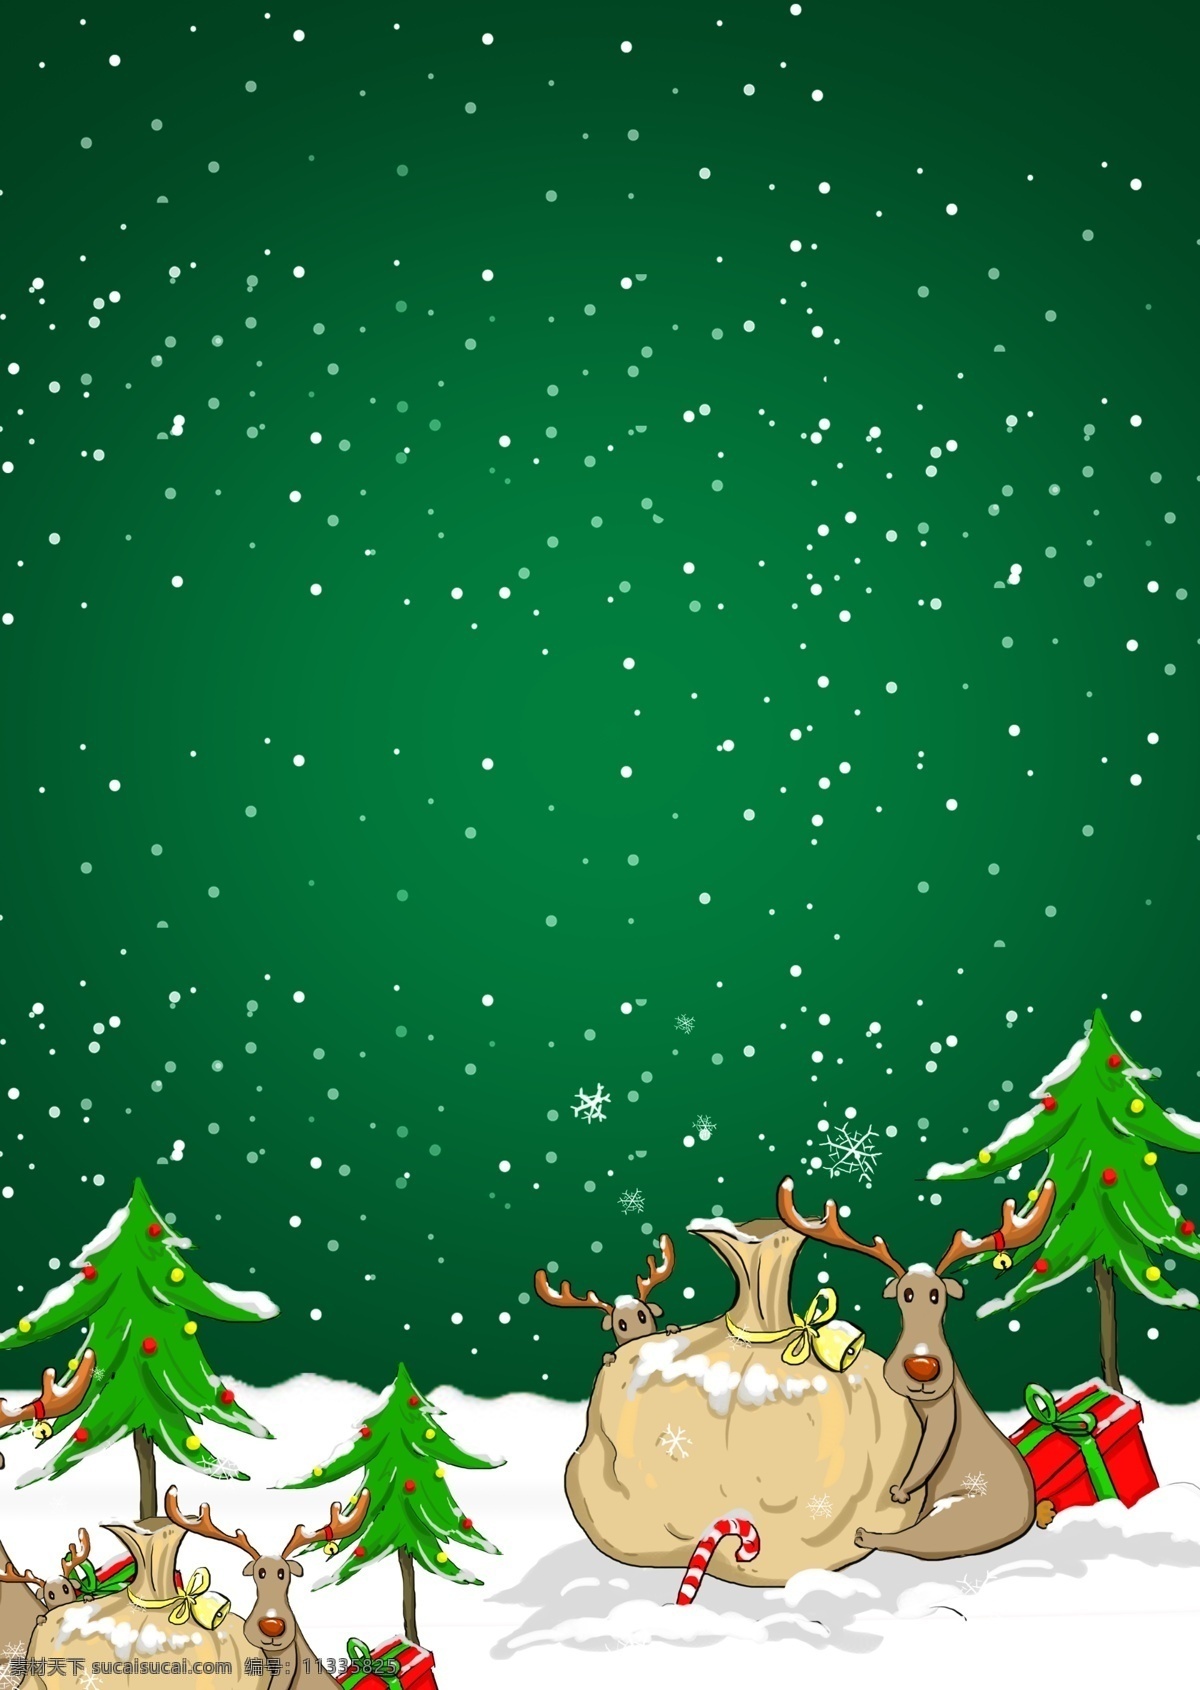 绿色 圣诞节 主题 背景 圣诞树 圣诞背景 广告背景 麋鹿 2018圣诞 圣诞活动 圣诞节背景 背景设计 新年背景 节日背景